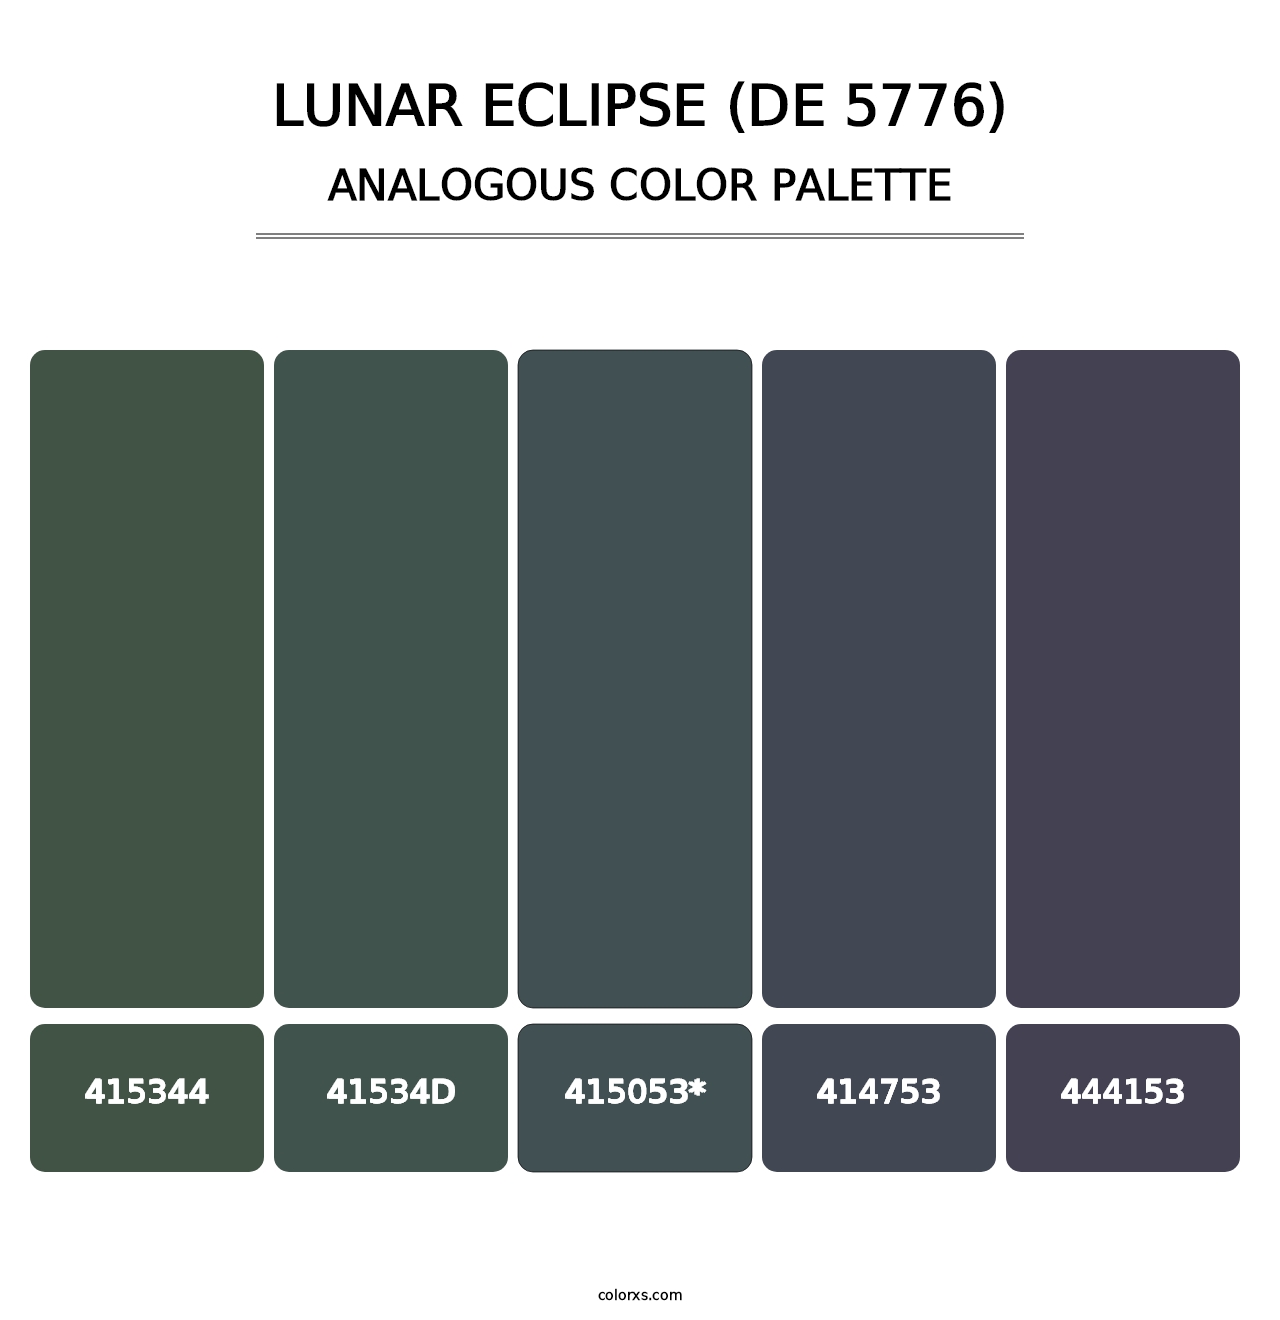 Lunar Eclipse (DE 5776) - Analogous Color Palette